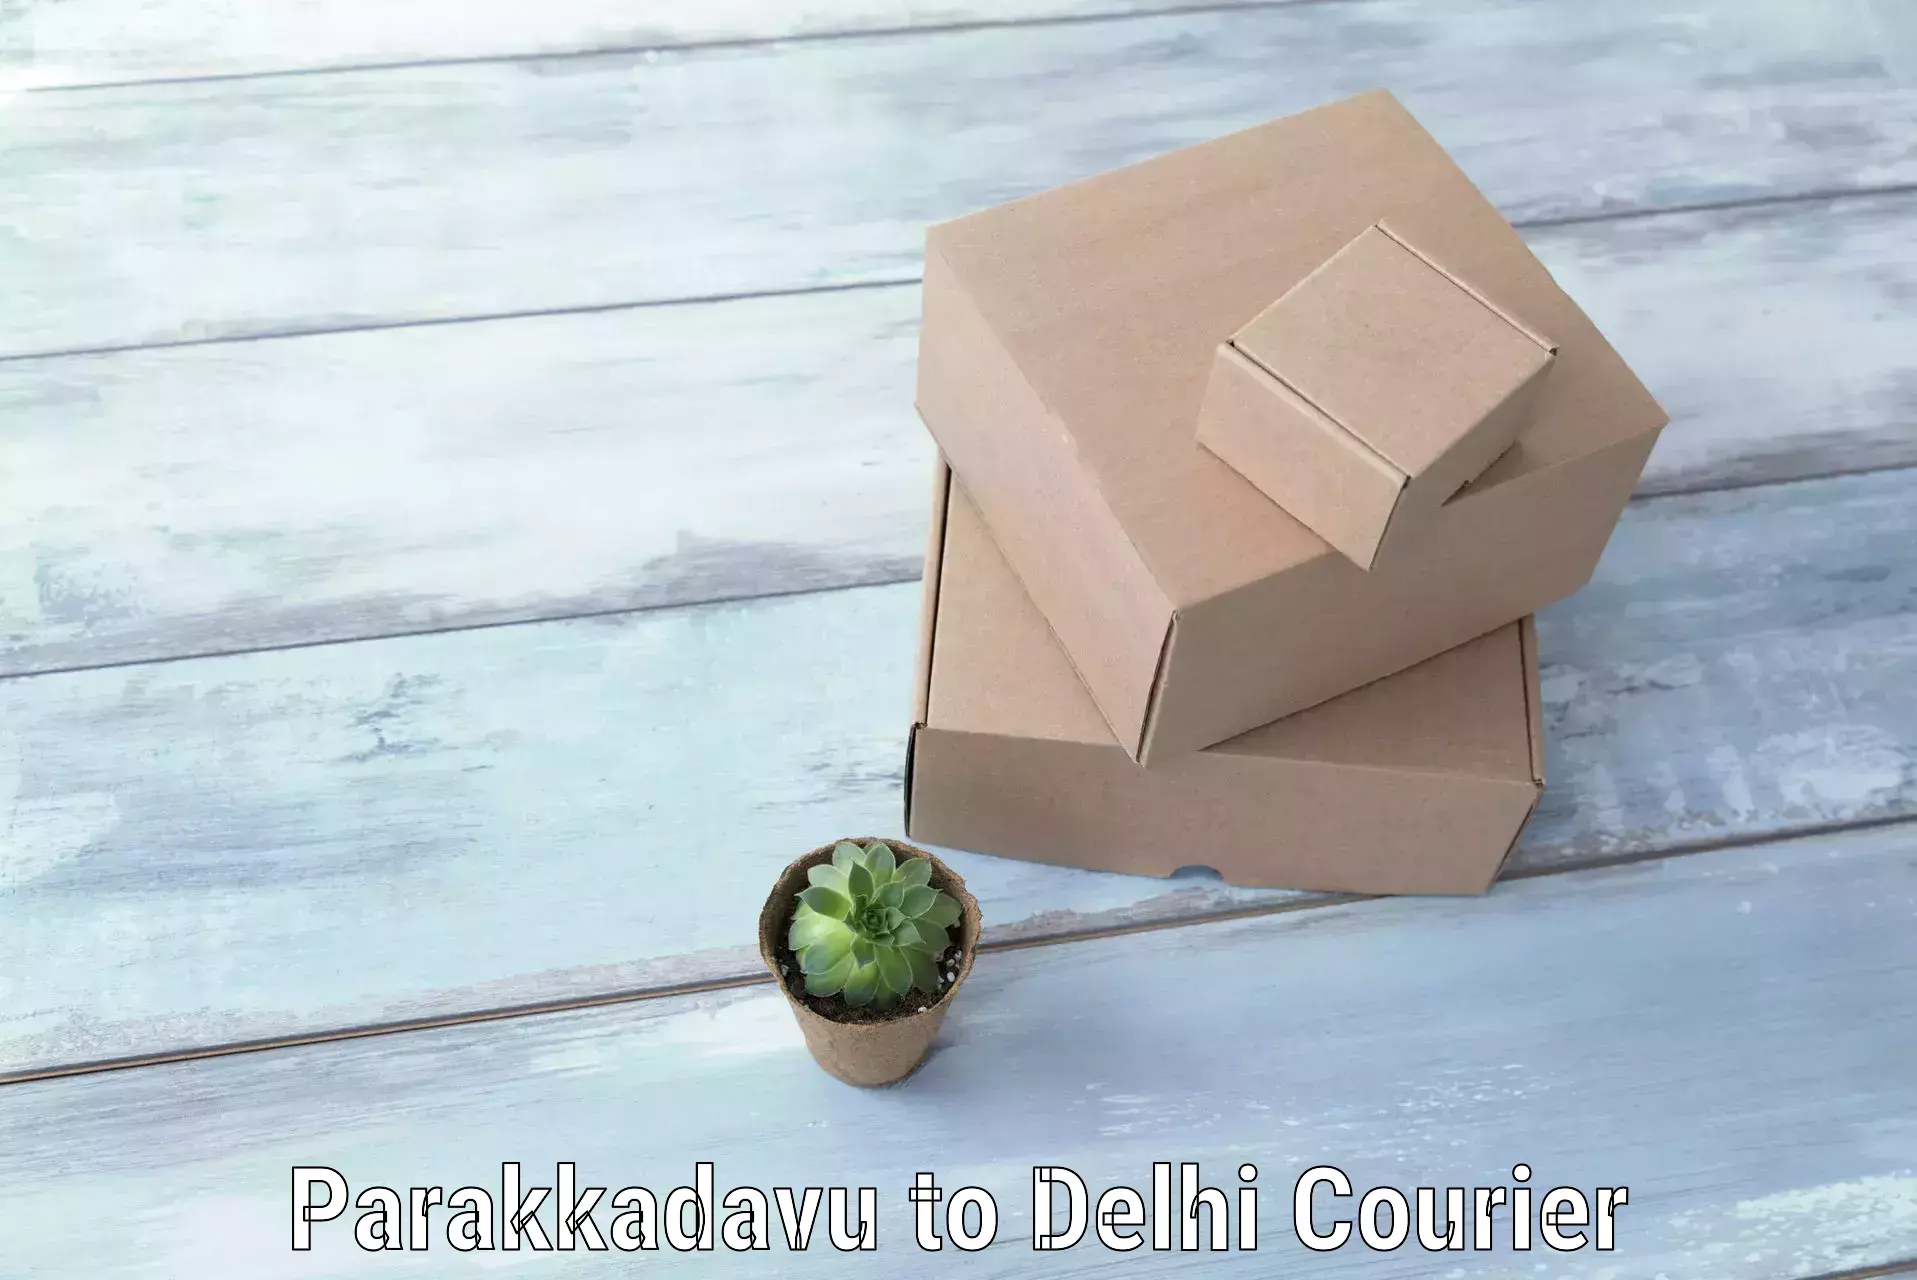 Luggage delivery rates Parakkadavu to Delhi